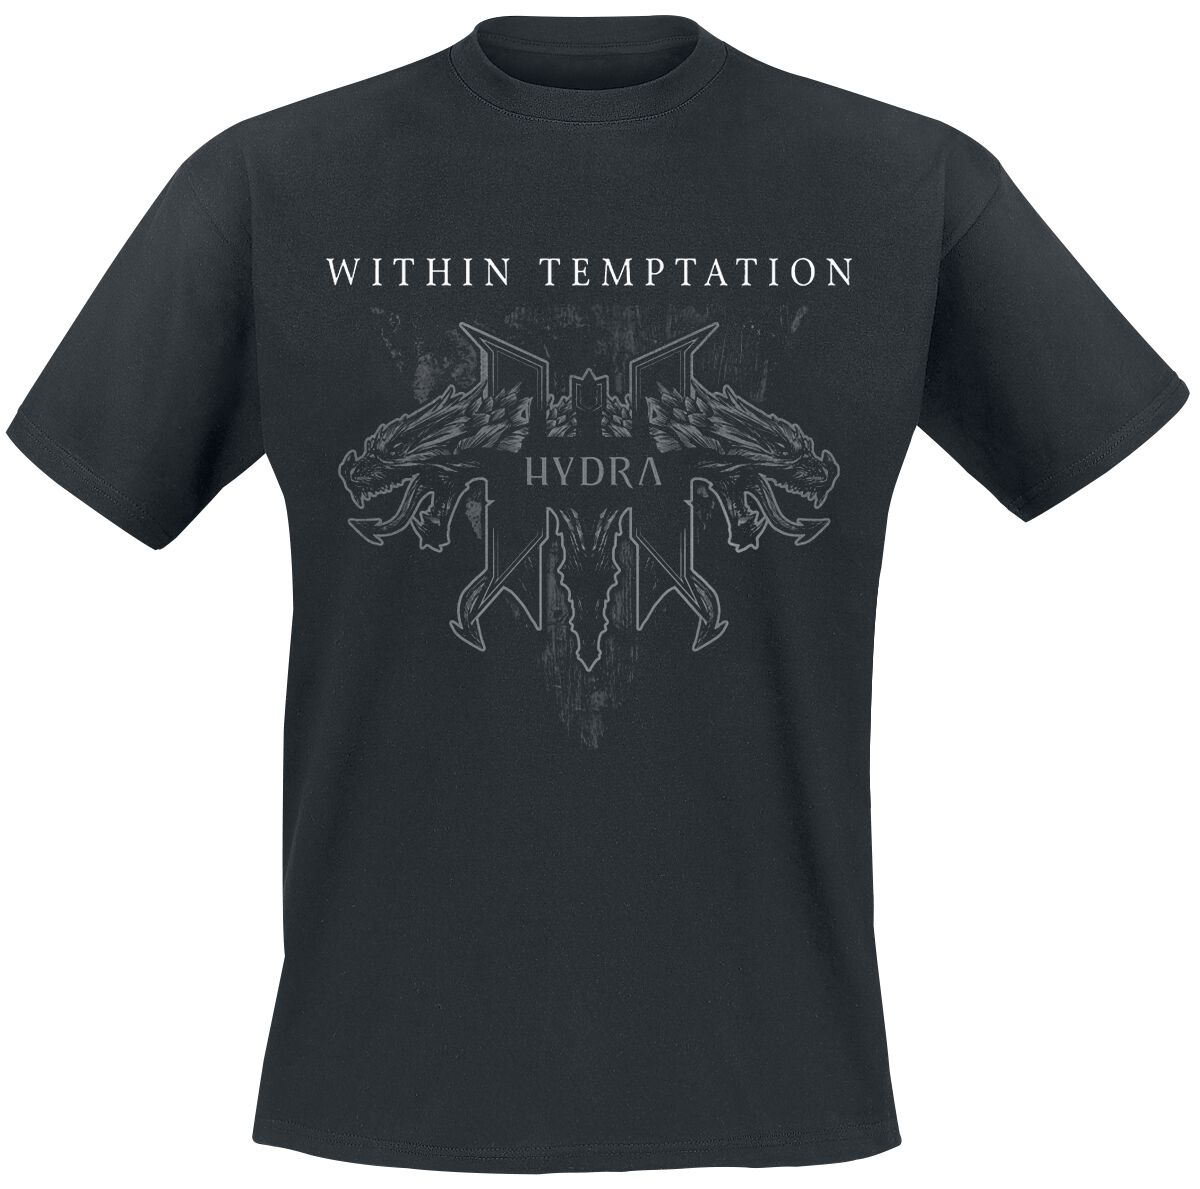 Within Temptation T-Shirt - Hydra Tracks - S bis XXL - für Männer - Größe XXL - schwarz  - Lizenziertes Merchandise!